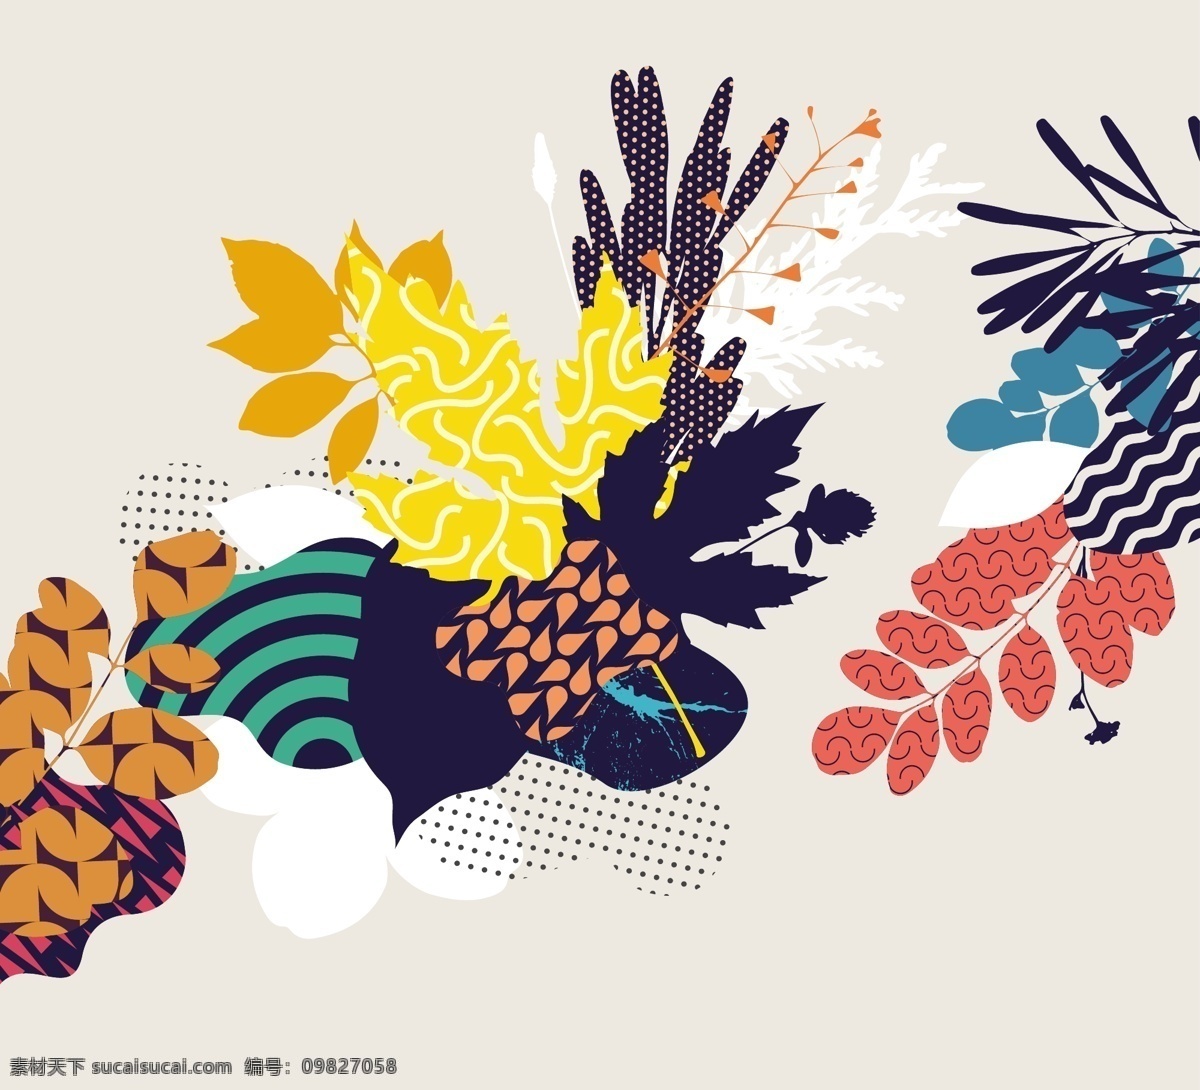 彩色 植物 抽象 科技 时尚 背景 植物背景 植物抽象背景 植物抽象 抽象背景 抽象素材 科技背景 科技广告 科技海报 科技素材 植物素材 海报背景 海报